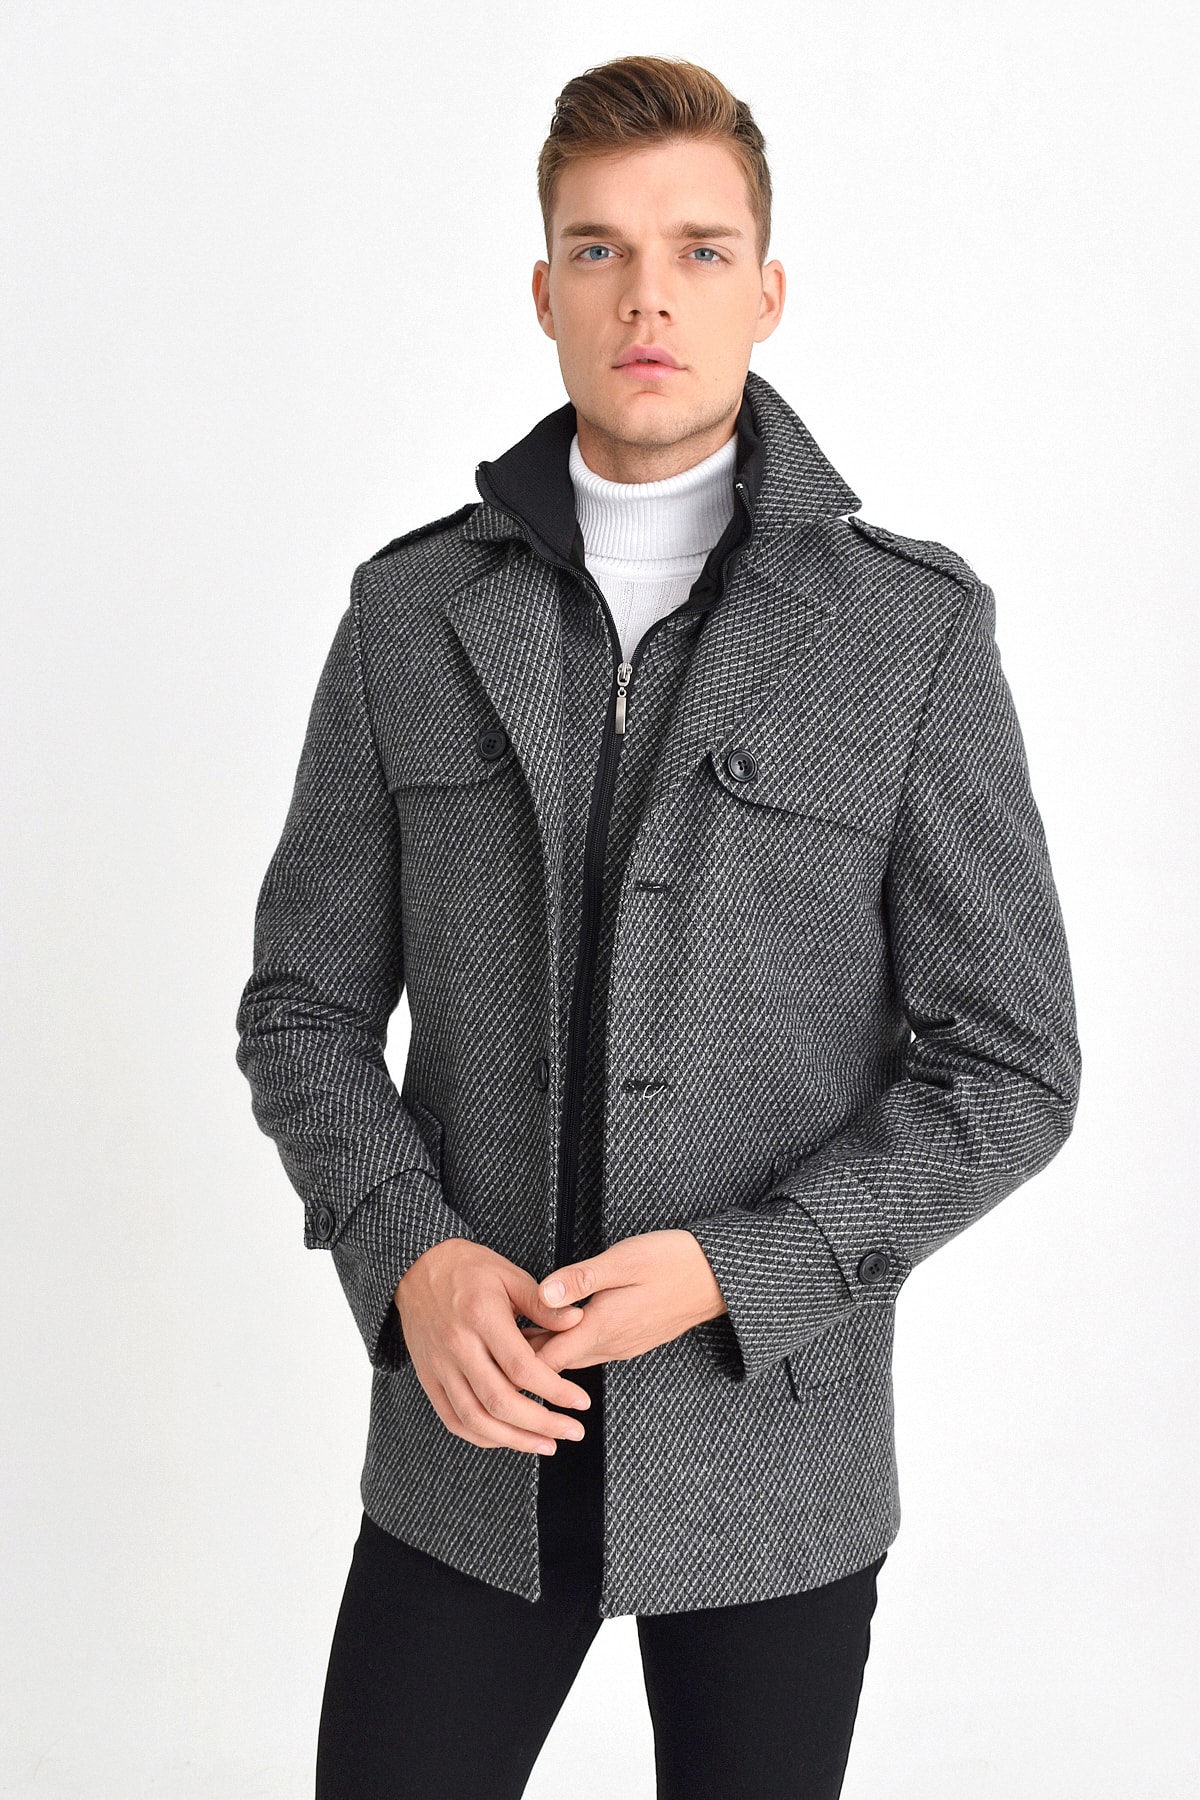 DYNAMO Mantel Grau Zweireihig Fast ausverkauft